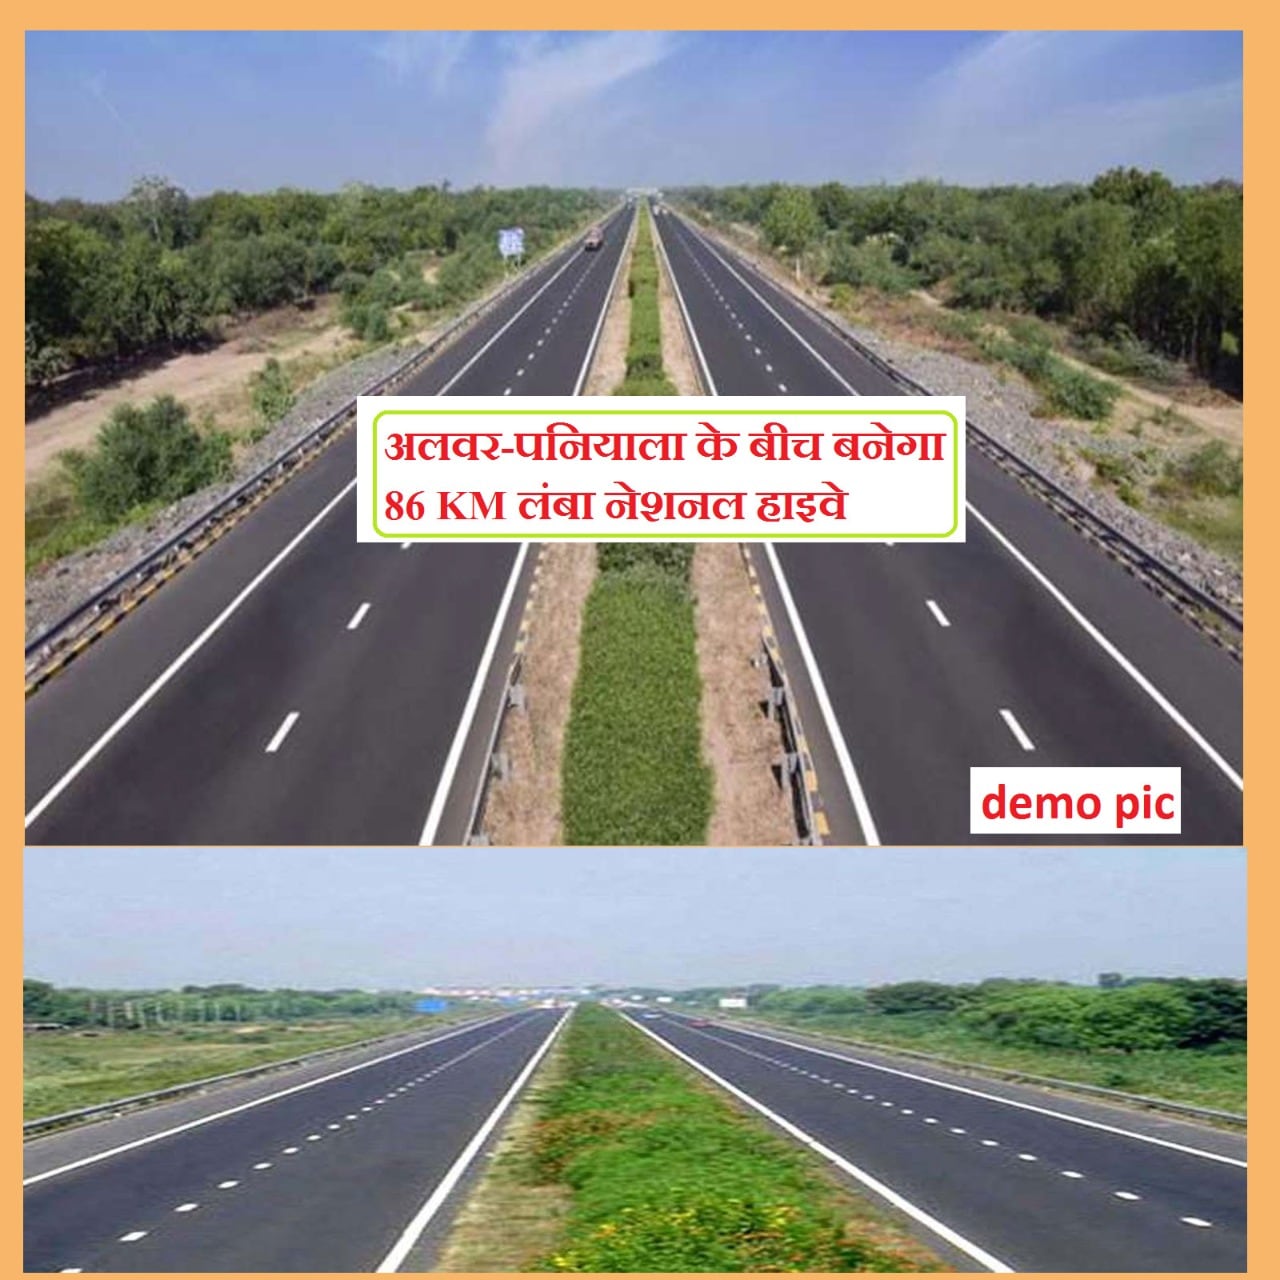  पनियाला मोड़ से अलवर में बड़ौदामेव तक भूतल परिवहन मंत्रालय द्वारा अनुमोदित नए राष्ट्रीय राजमार्ग को राष्ट्रीय राजमार्ग संख्या 148B नाम दिया गया है.राजमार्ग के लिए करीब 56 गांवों की जमीन का अधिग्रहण किया जाएगा. इस हाईवे में कोटपुतली के दो गांव, बानसूर के 14, मुंडावर के 9, अलवर के 18, किशनगढ़ बास के दो, रामगढ़ के 9 और लक्ष्मणगढ़ के 2 गांव शामिल होंगे.